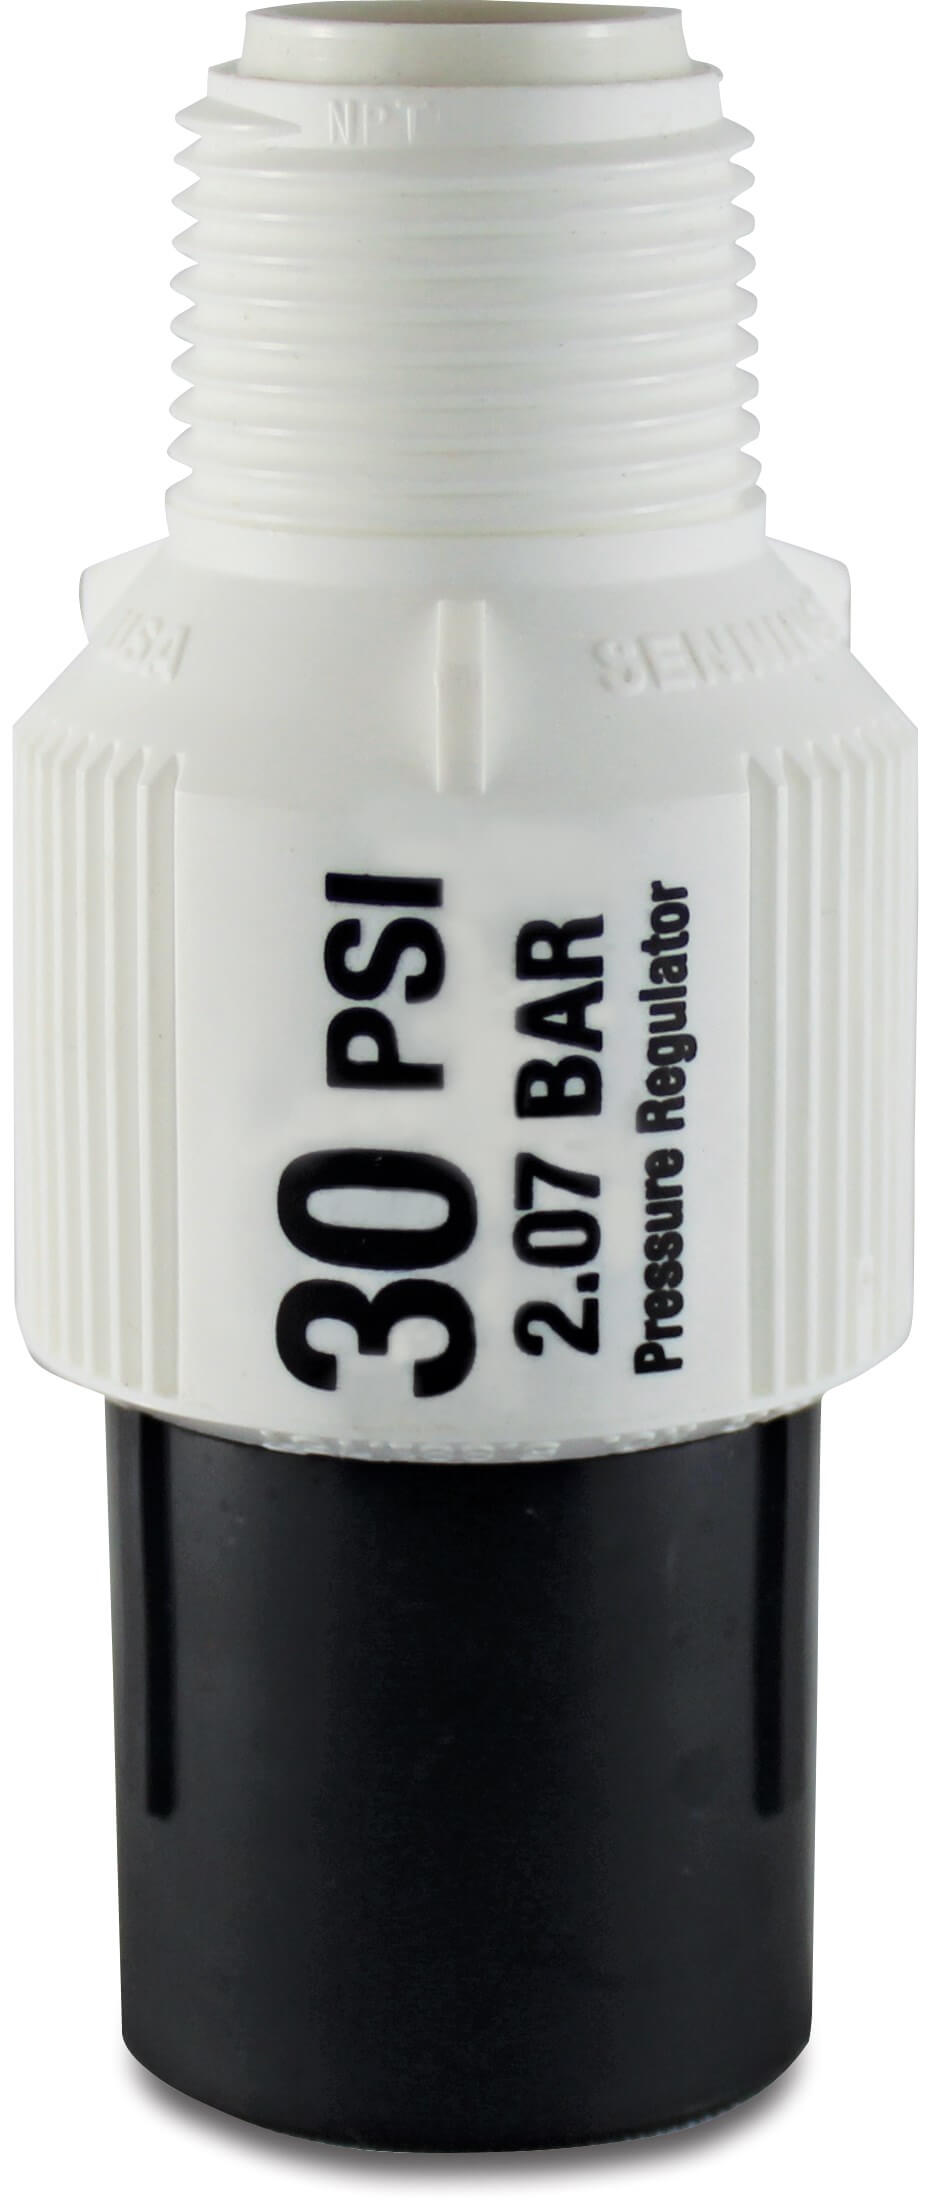 Senninger Pressure regulator plastic 3/4" female thread black/white type PR-LG-10